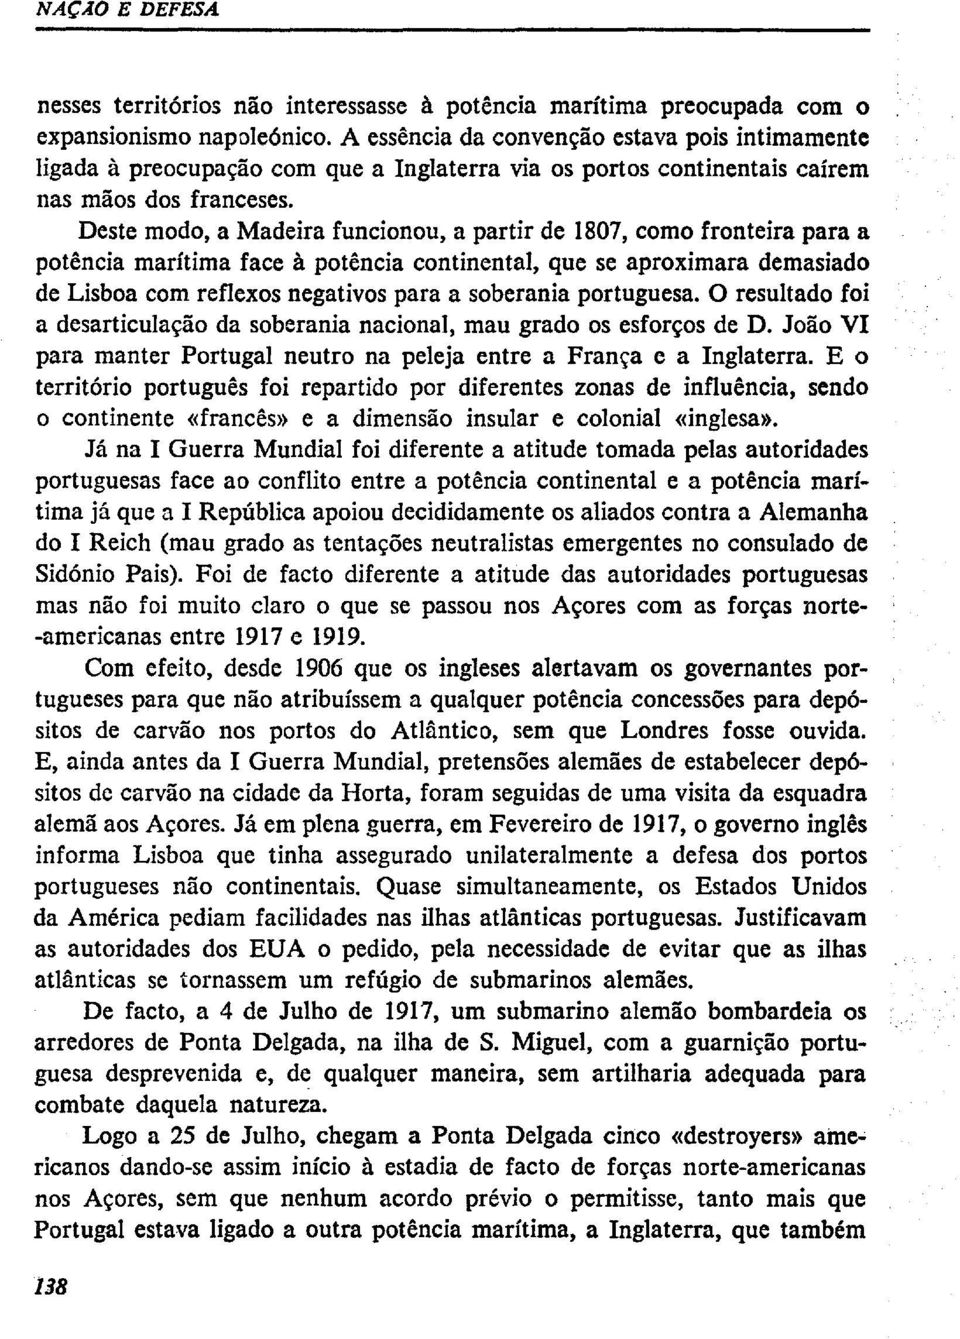 Deste modo, a Madeira funcionou, a partir de 1807, corno fronteira para a potência marítima face à potência continental, que se aproximara demasiado de Lisboa com reflexos negativos para a soberania